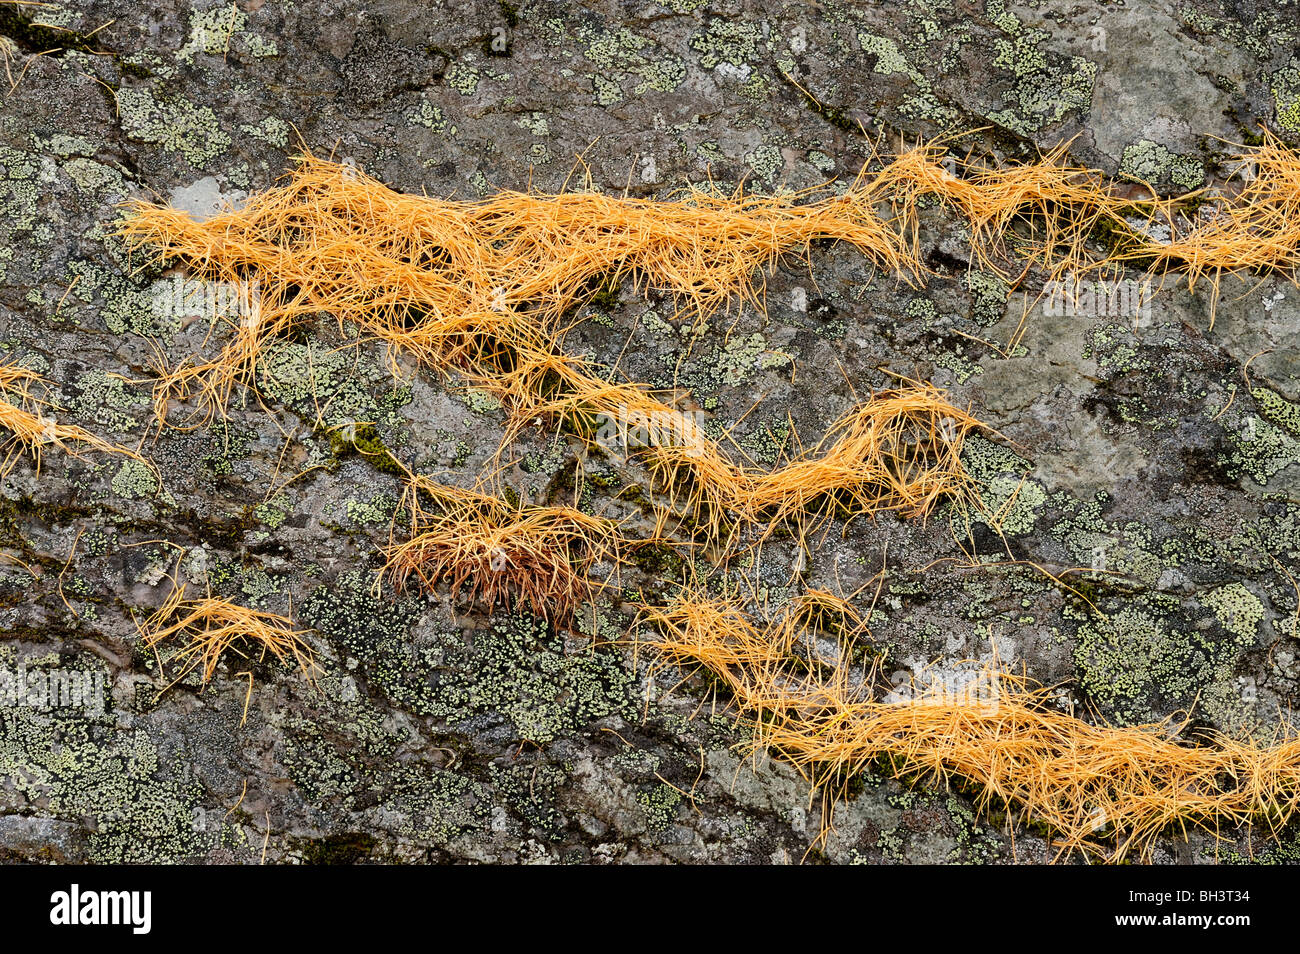 Des affleurements rocheux avec des aiguilles de mélèze, Le mélèze de l'Ouest (Larix occidentalis), le parc national Yoho, Colombie-Britannique, Canada Banque D'Images